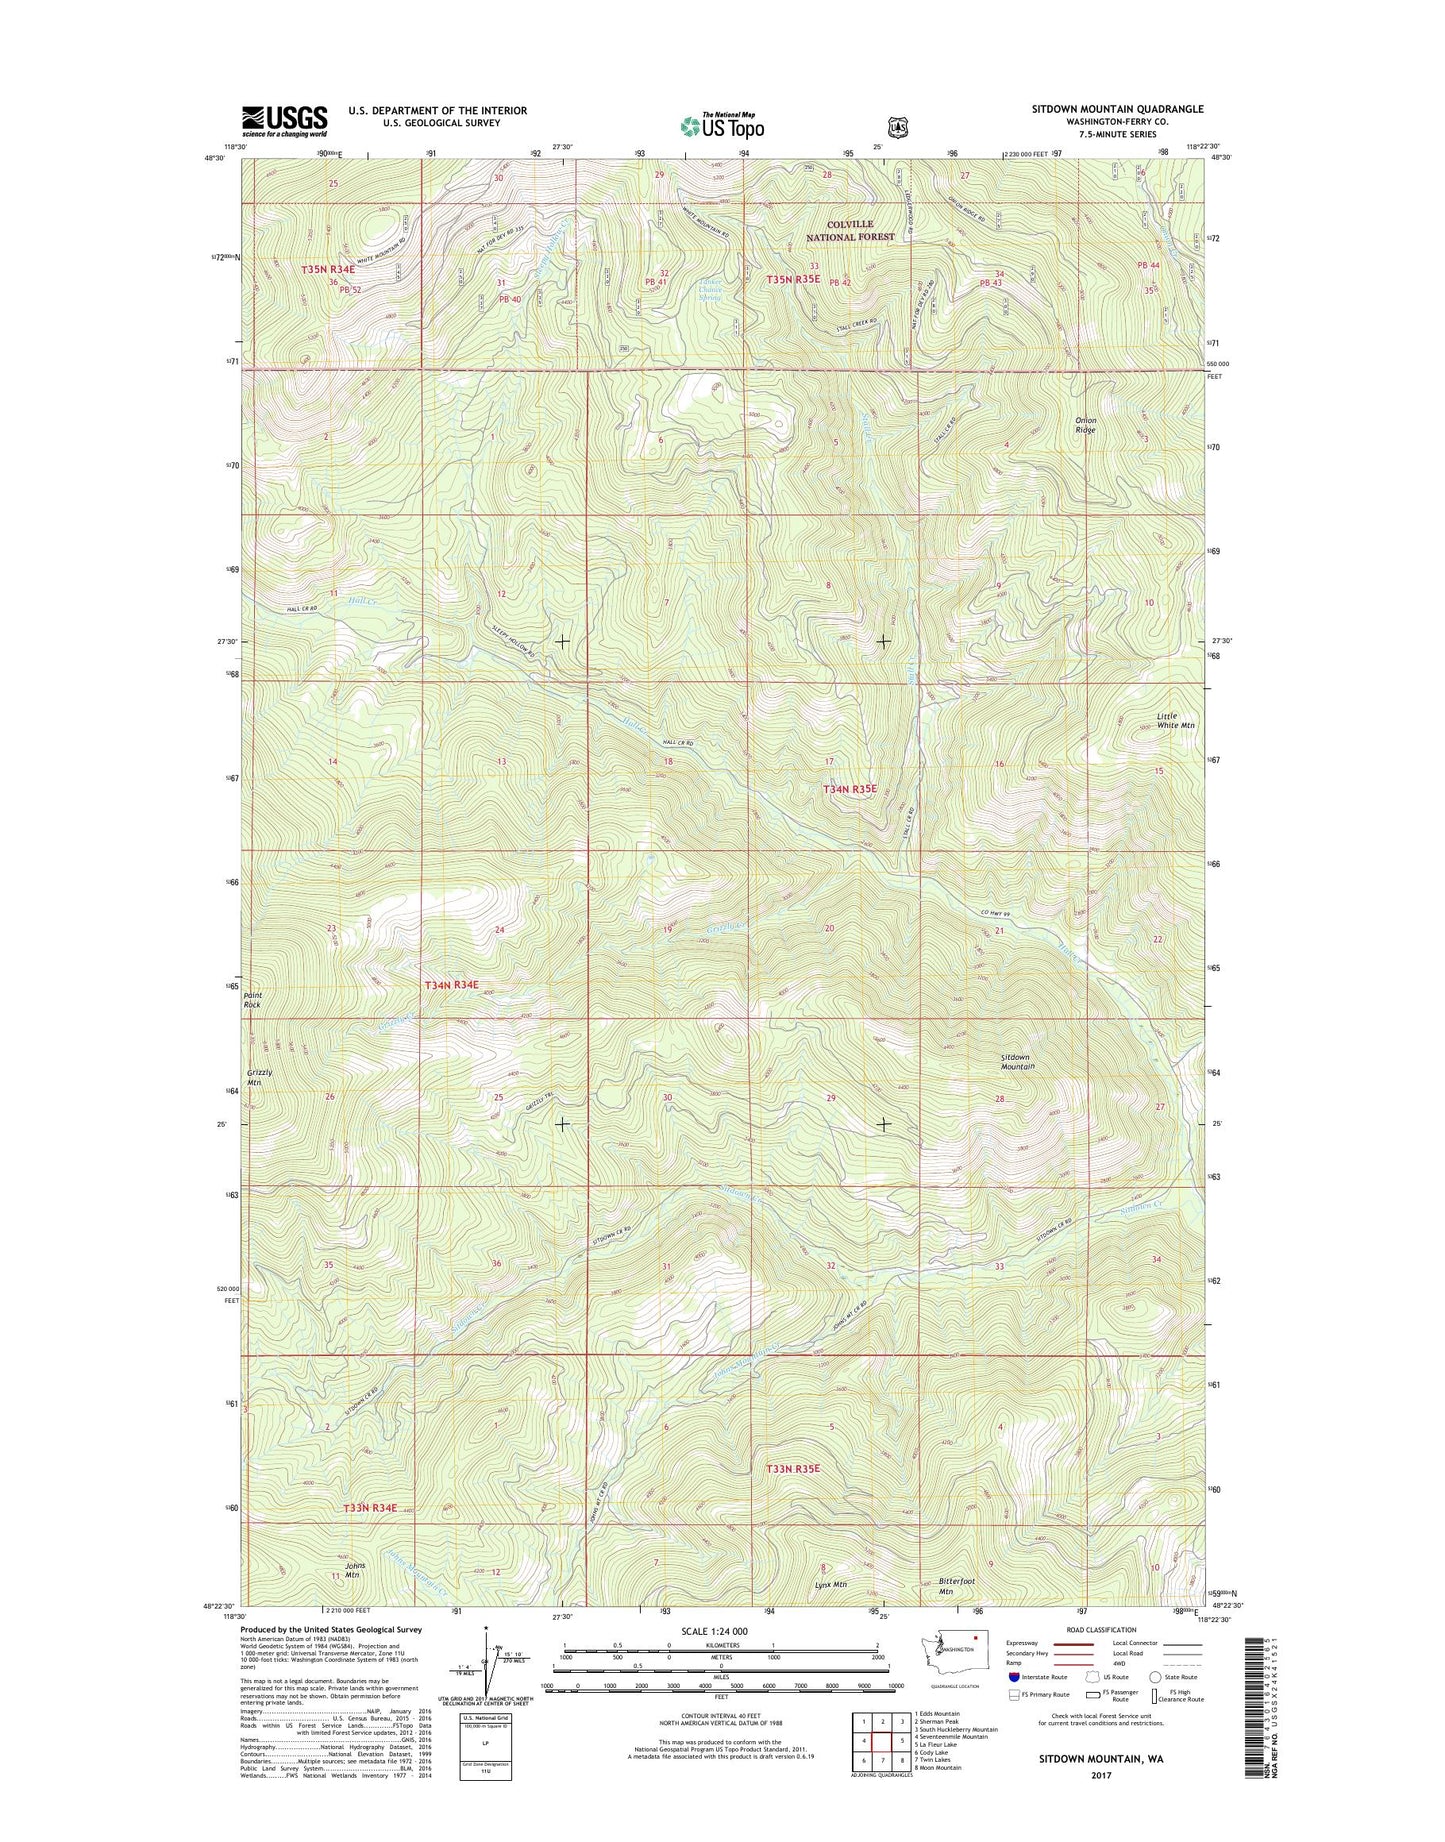 Sitdown Mountain Washington US Topo Map Image